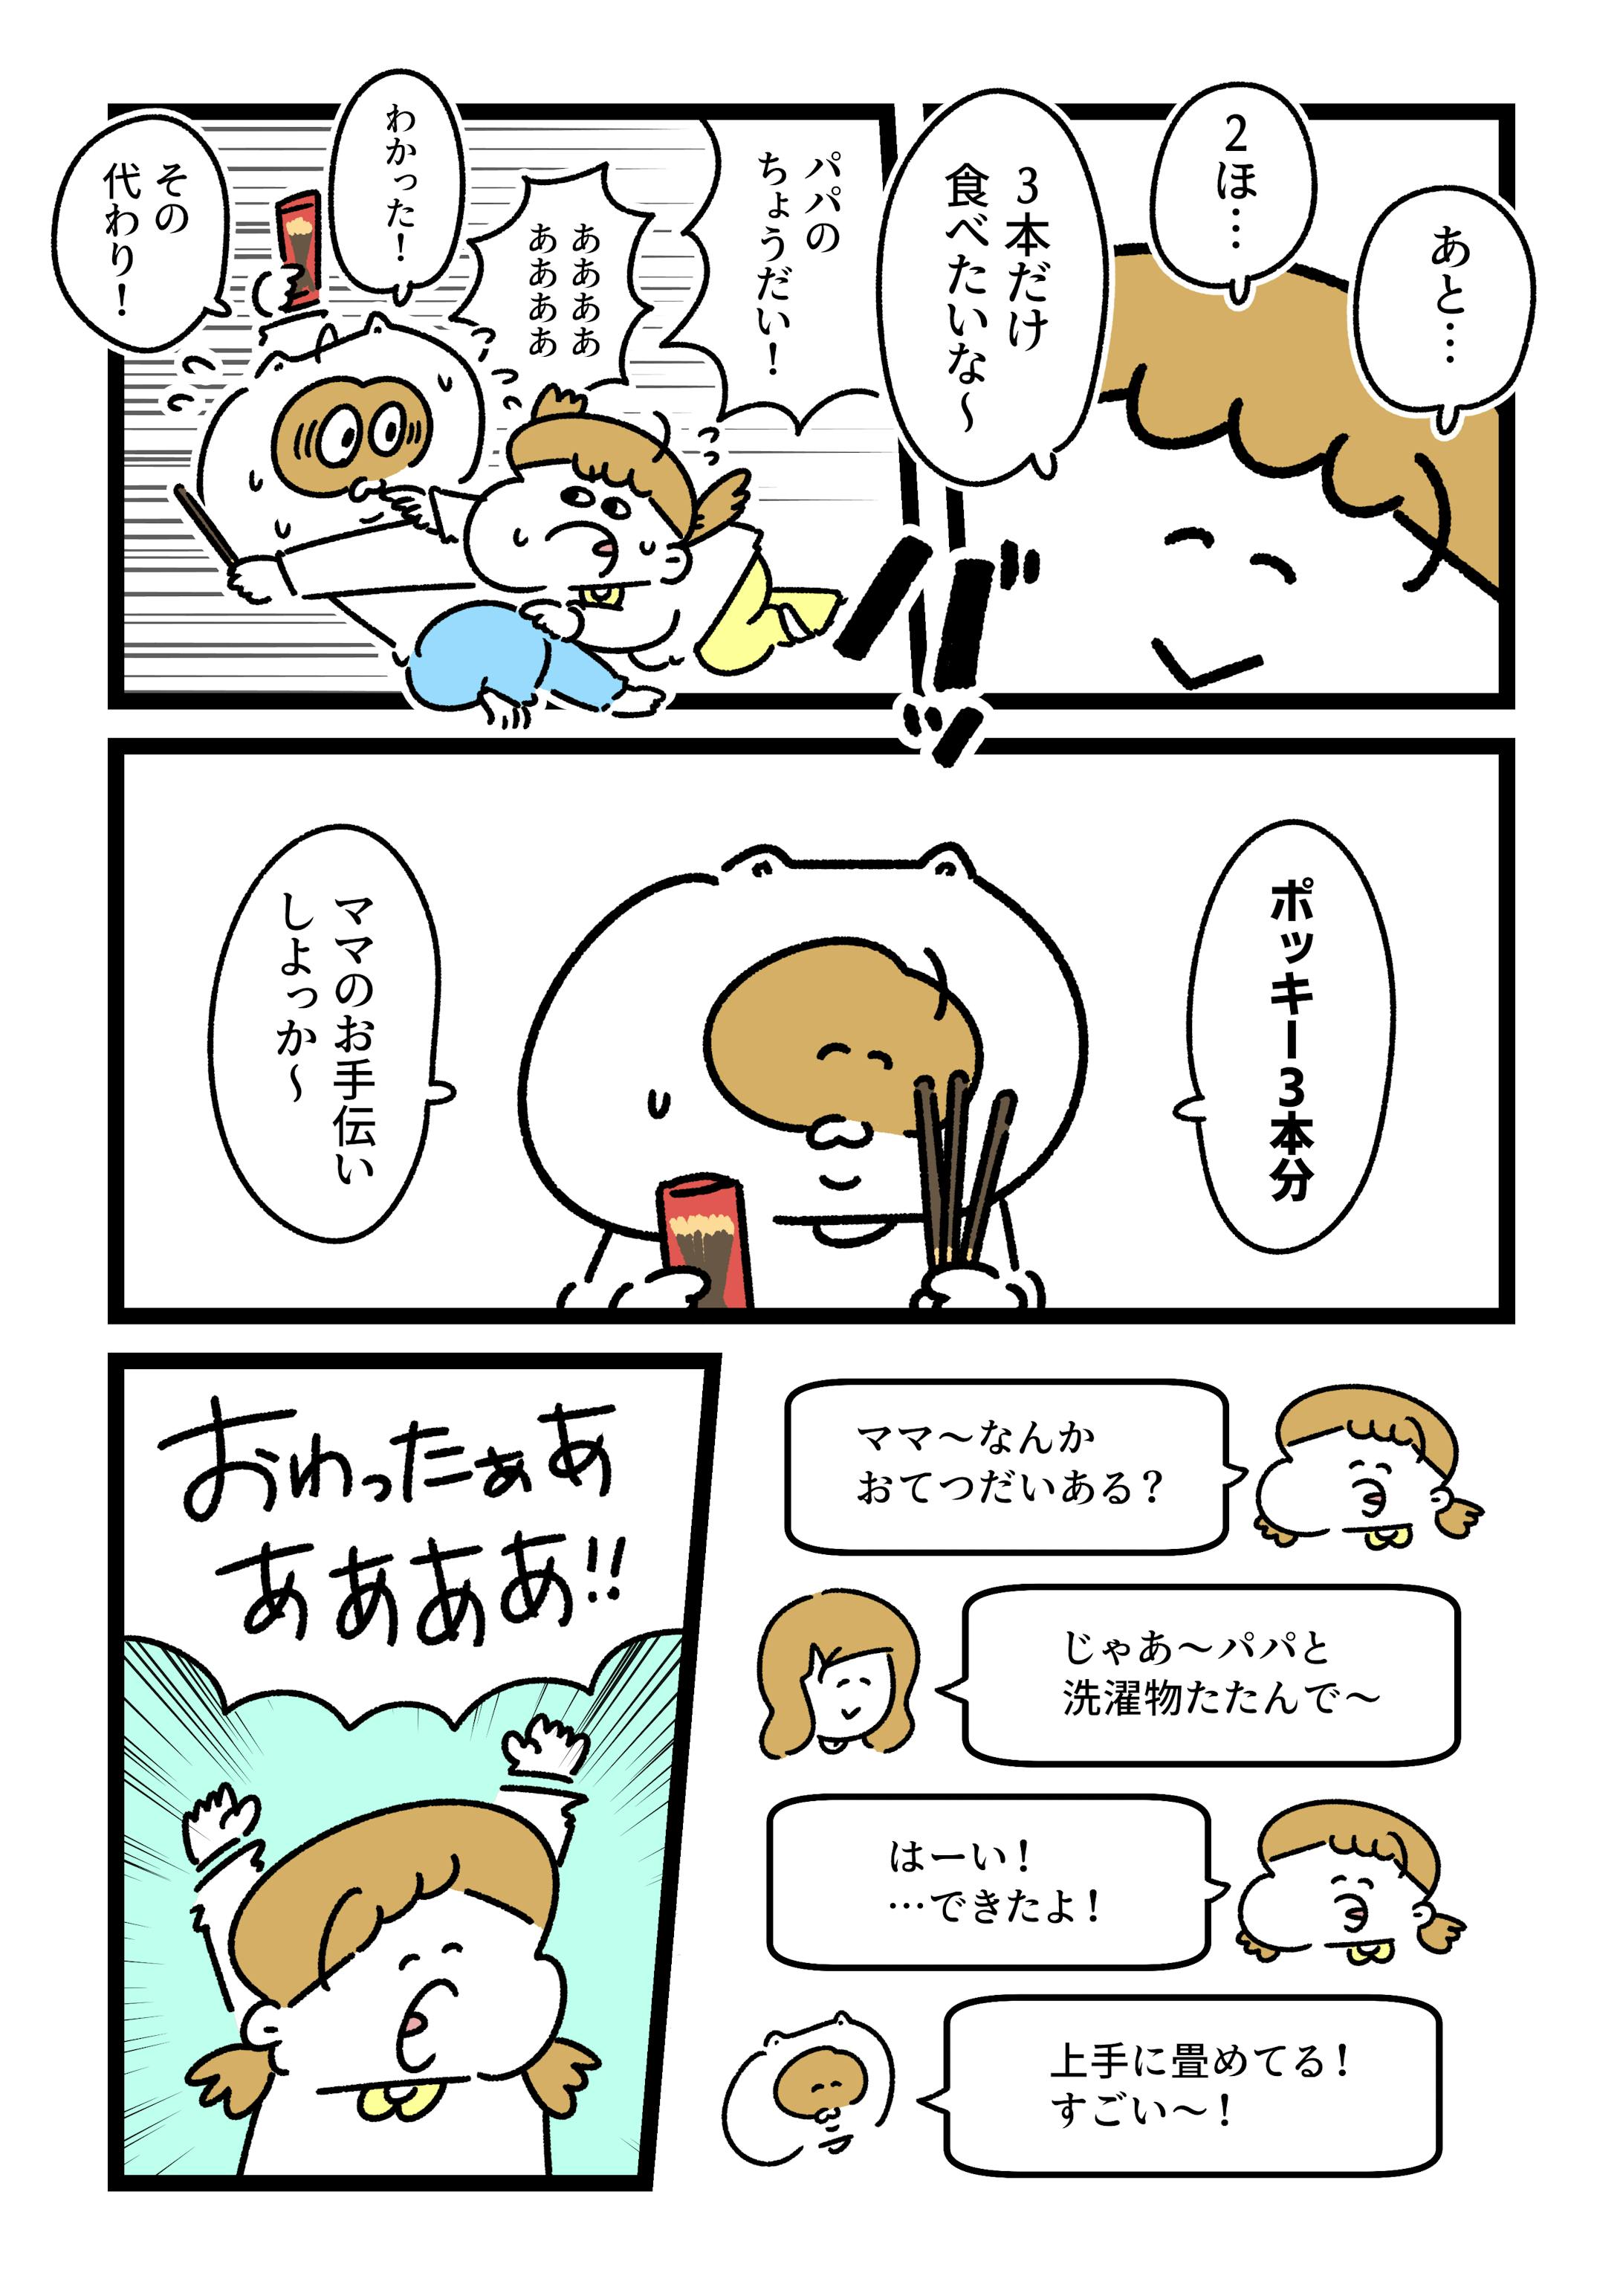 江崎グリコ様『ポッキーの日』PR漫画-2